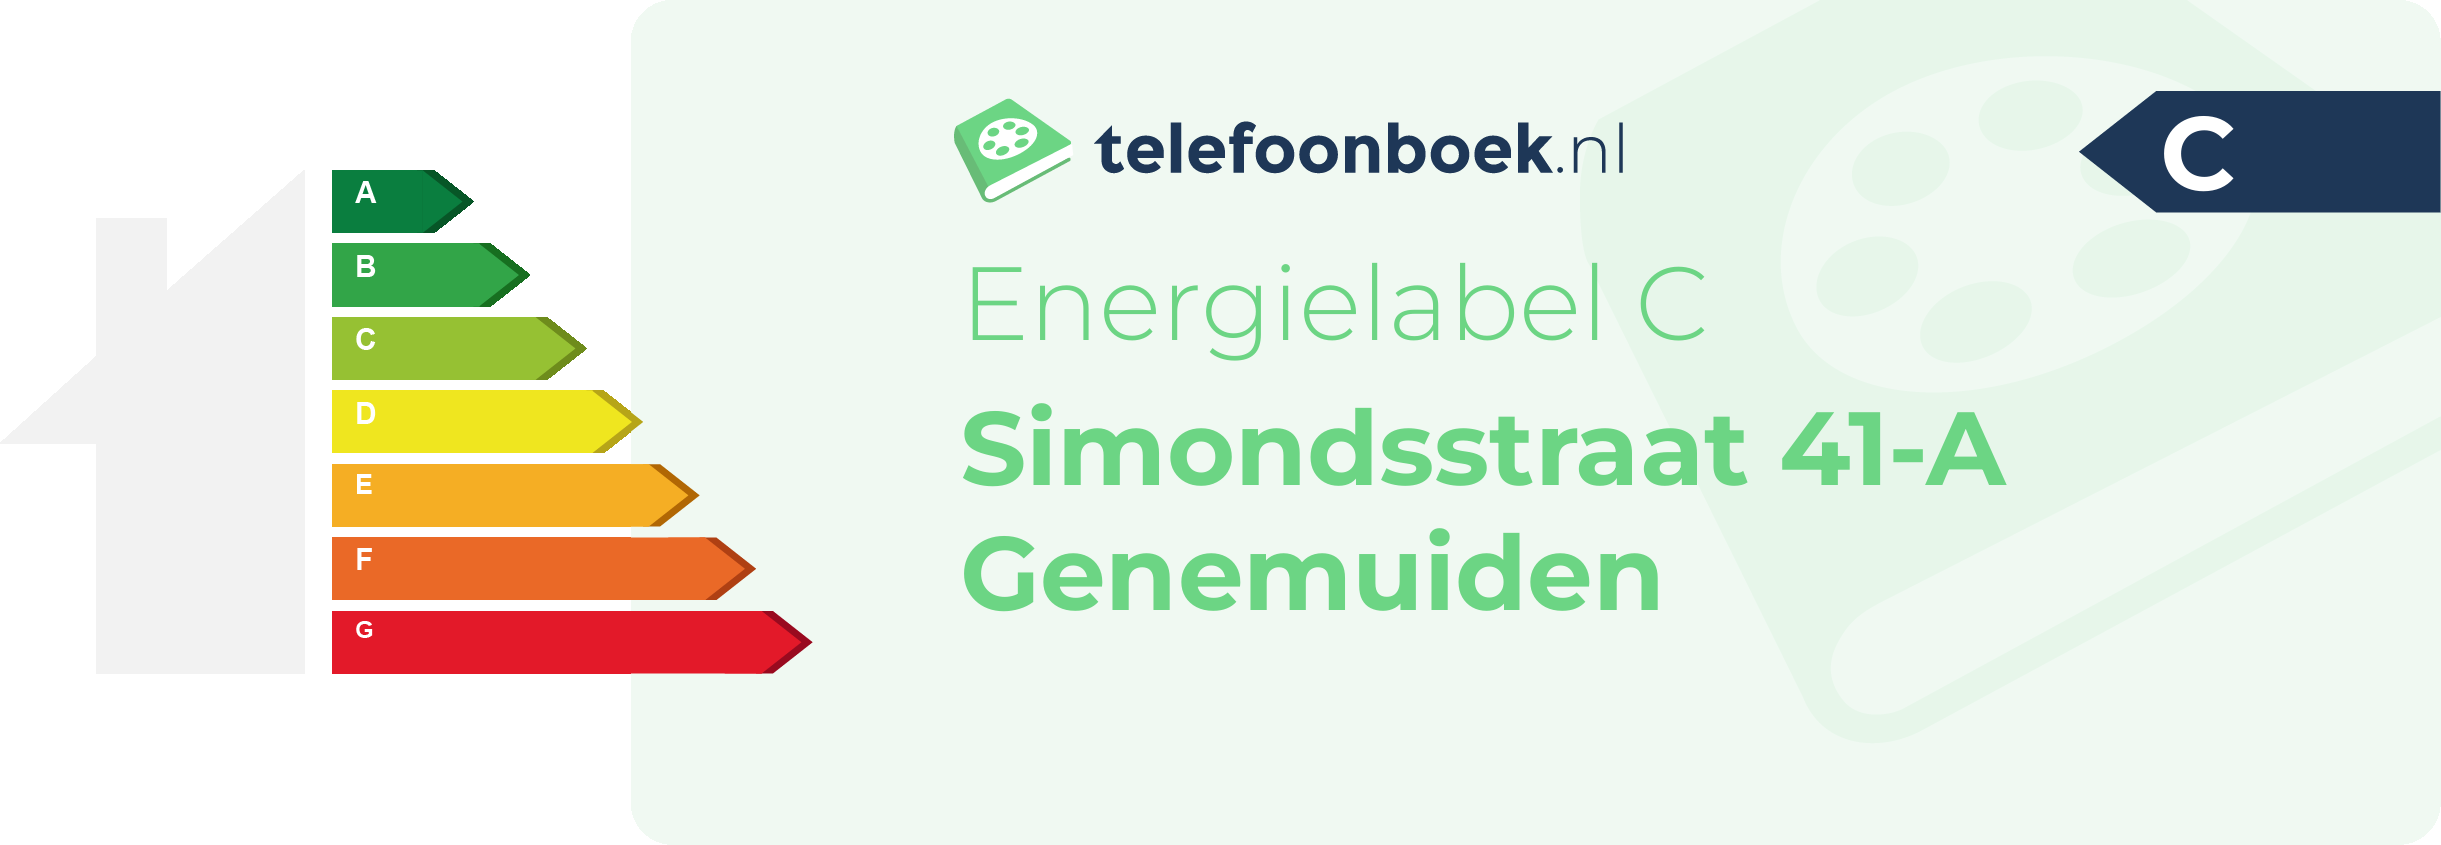 Energielabel Simondsstraat 41-A Genemuiden